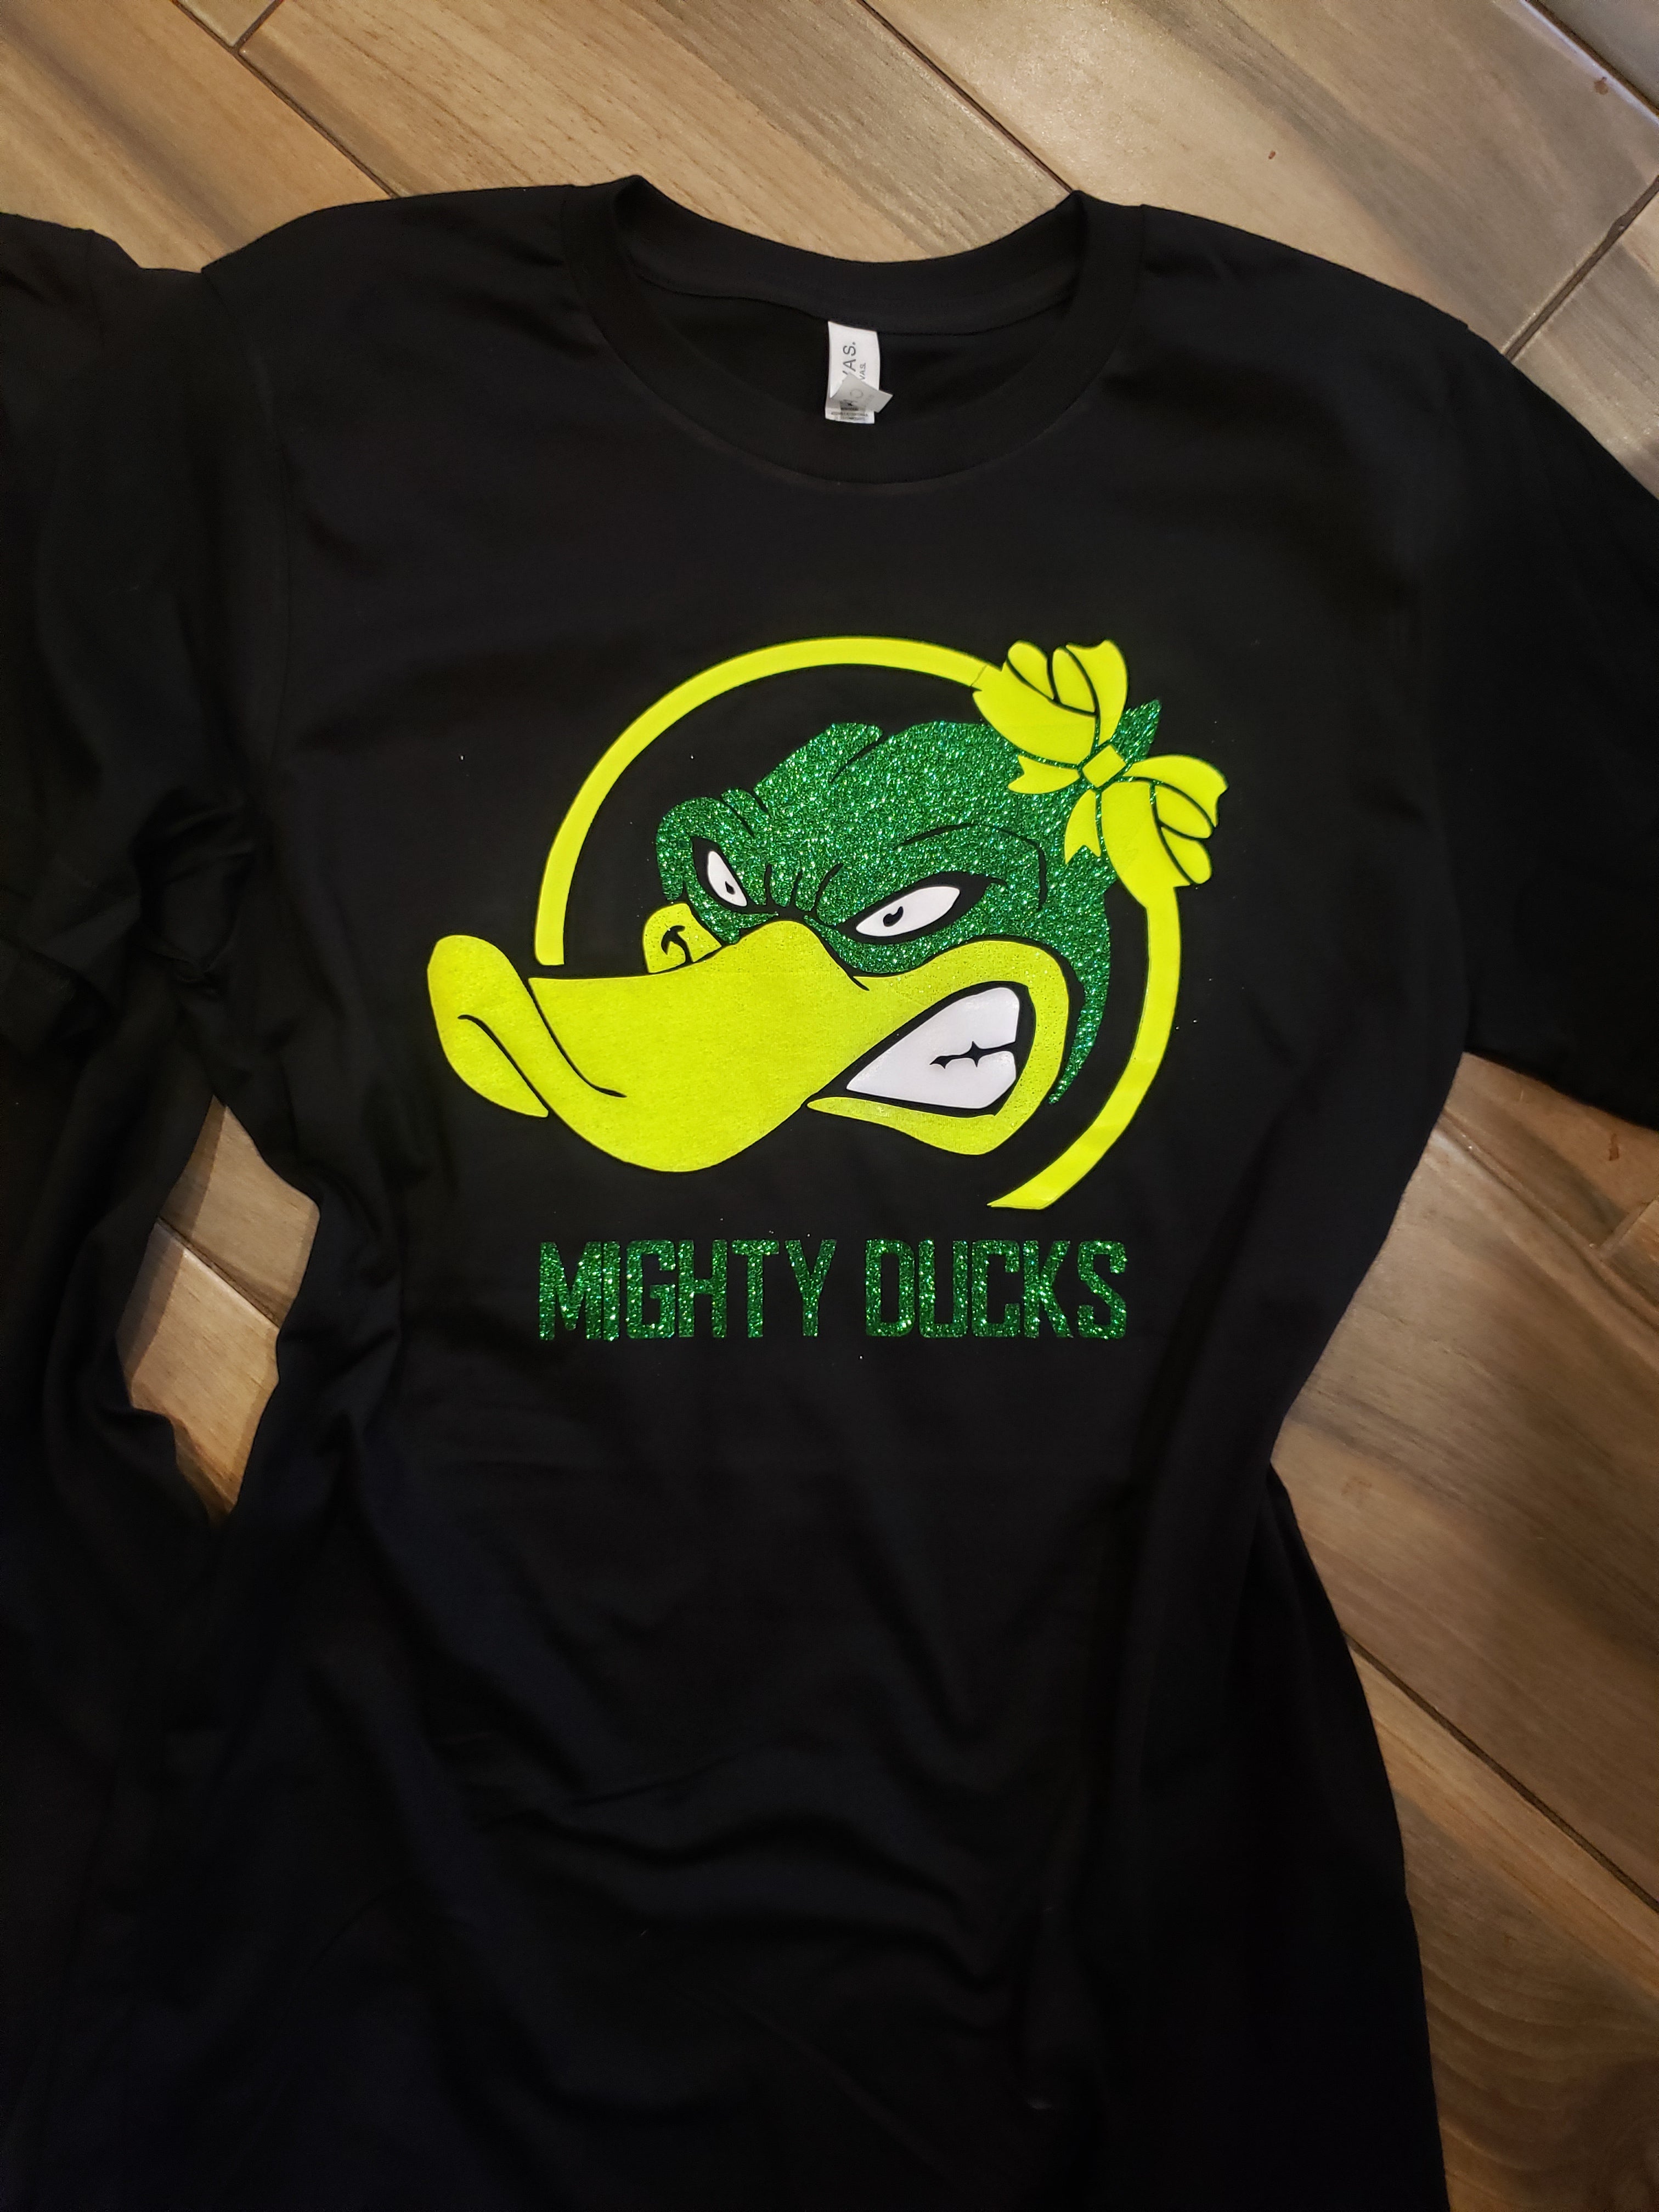  Mighty Ducks Shirt